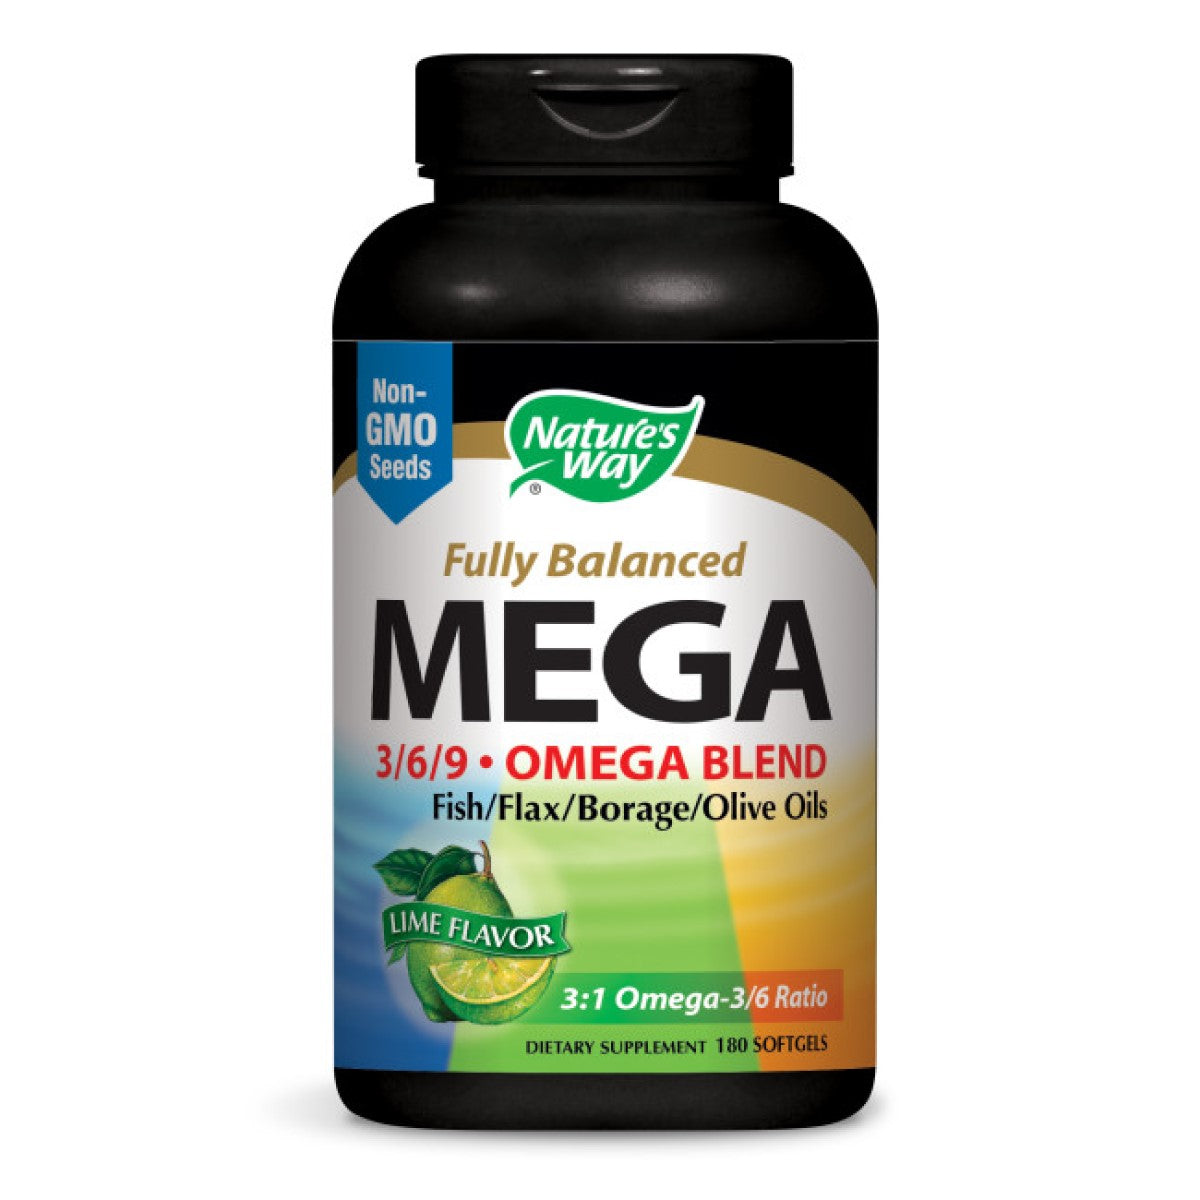 Primary image of Mega EFA Omega 3/6/9 Blend 1350mg